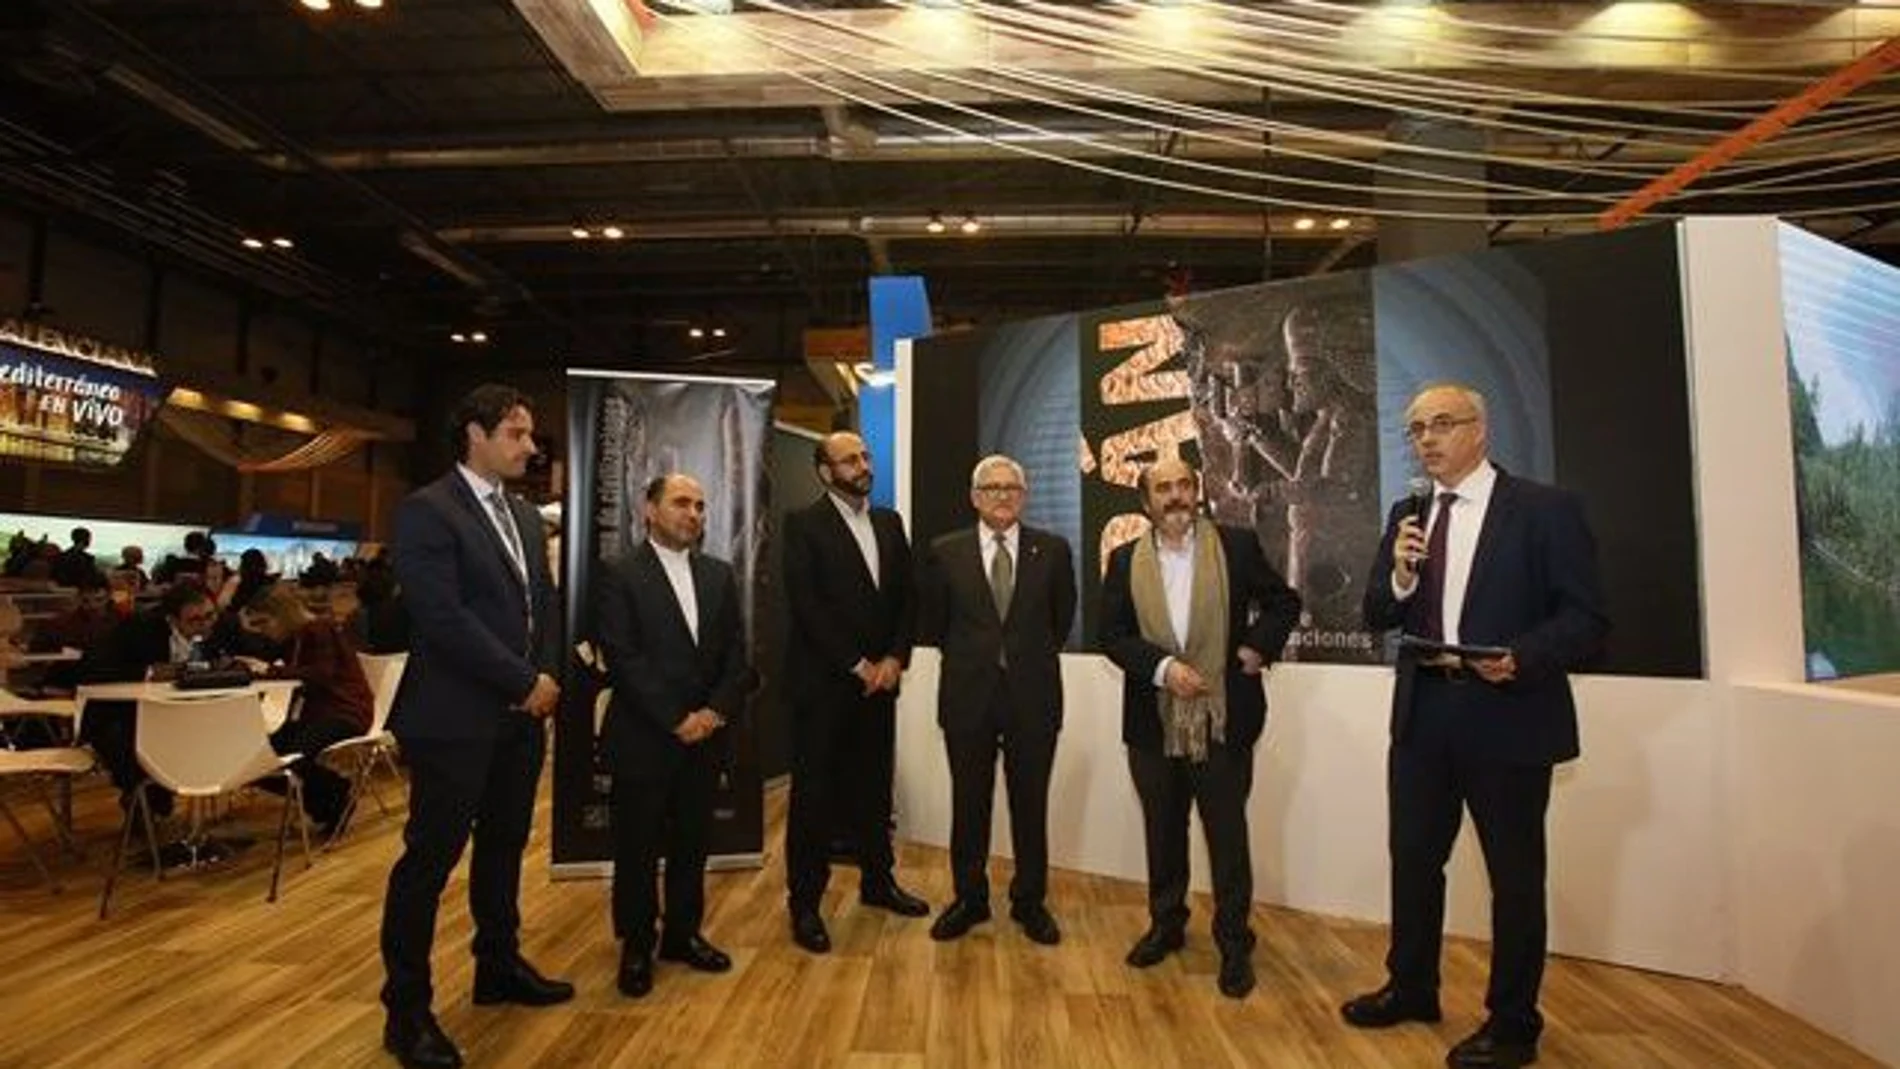 La exposición fue presentada el pasado mes de enero en Fitur, la Feria de Turismo de Madrid